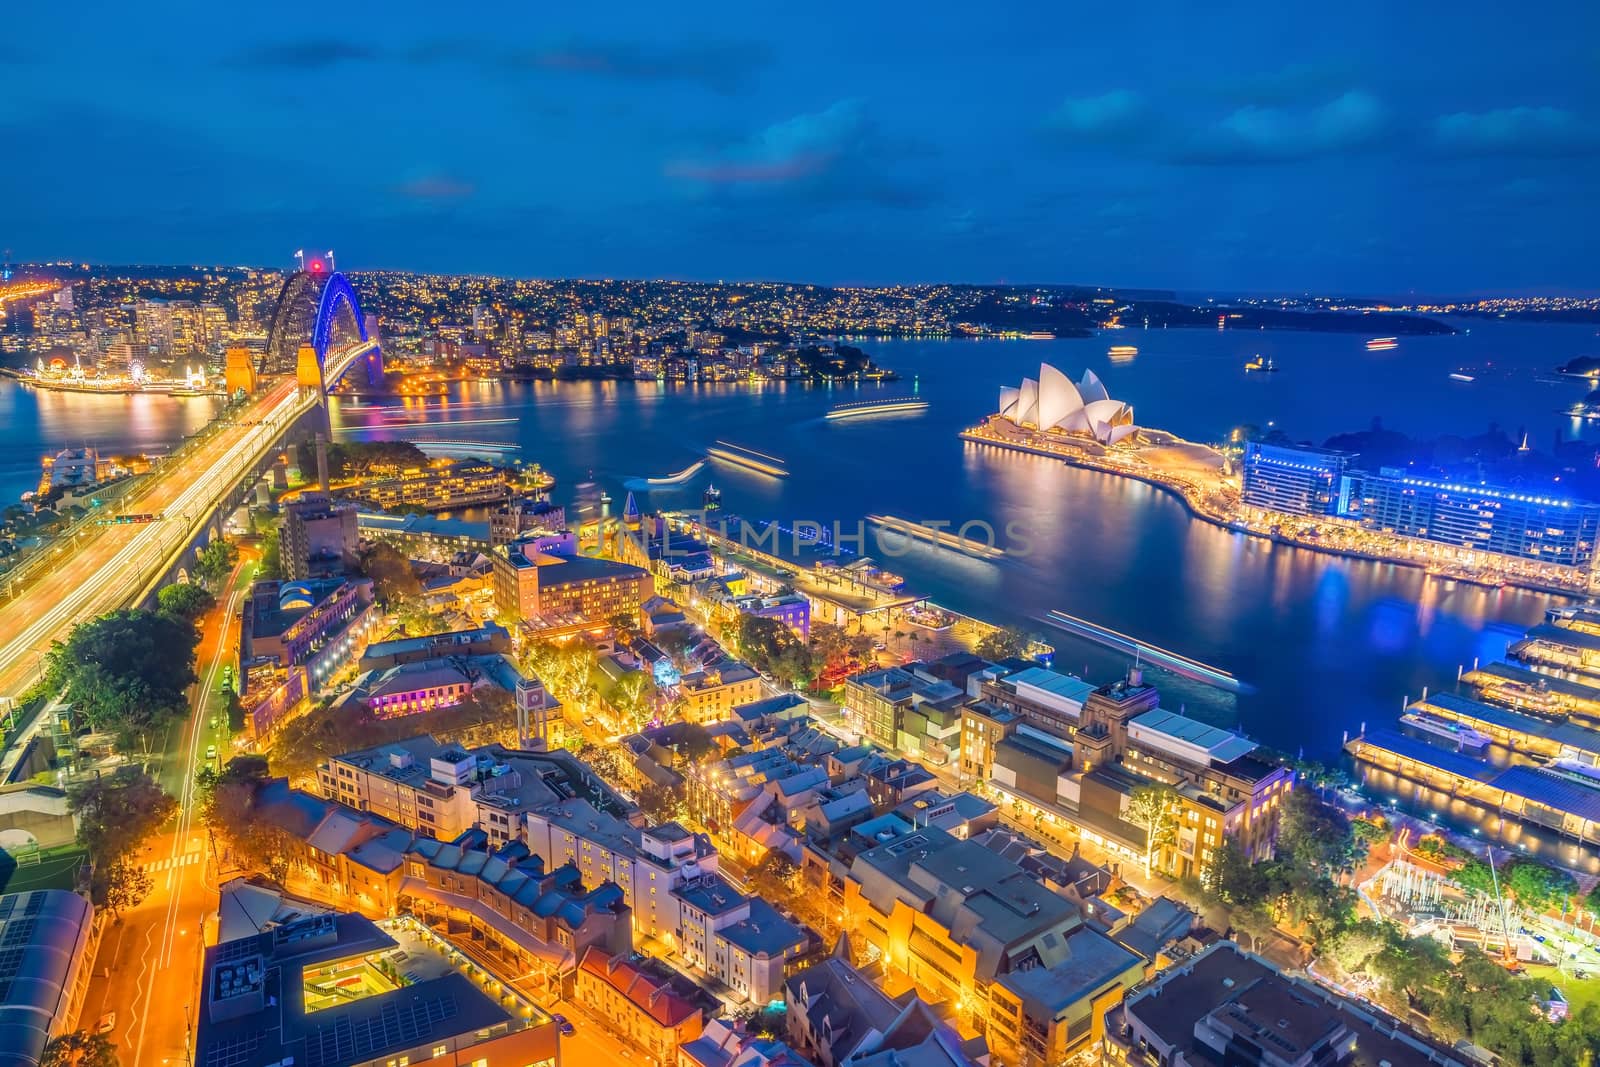 Downtown Sydney skyline in Australia by f11photo